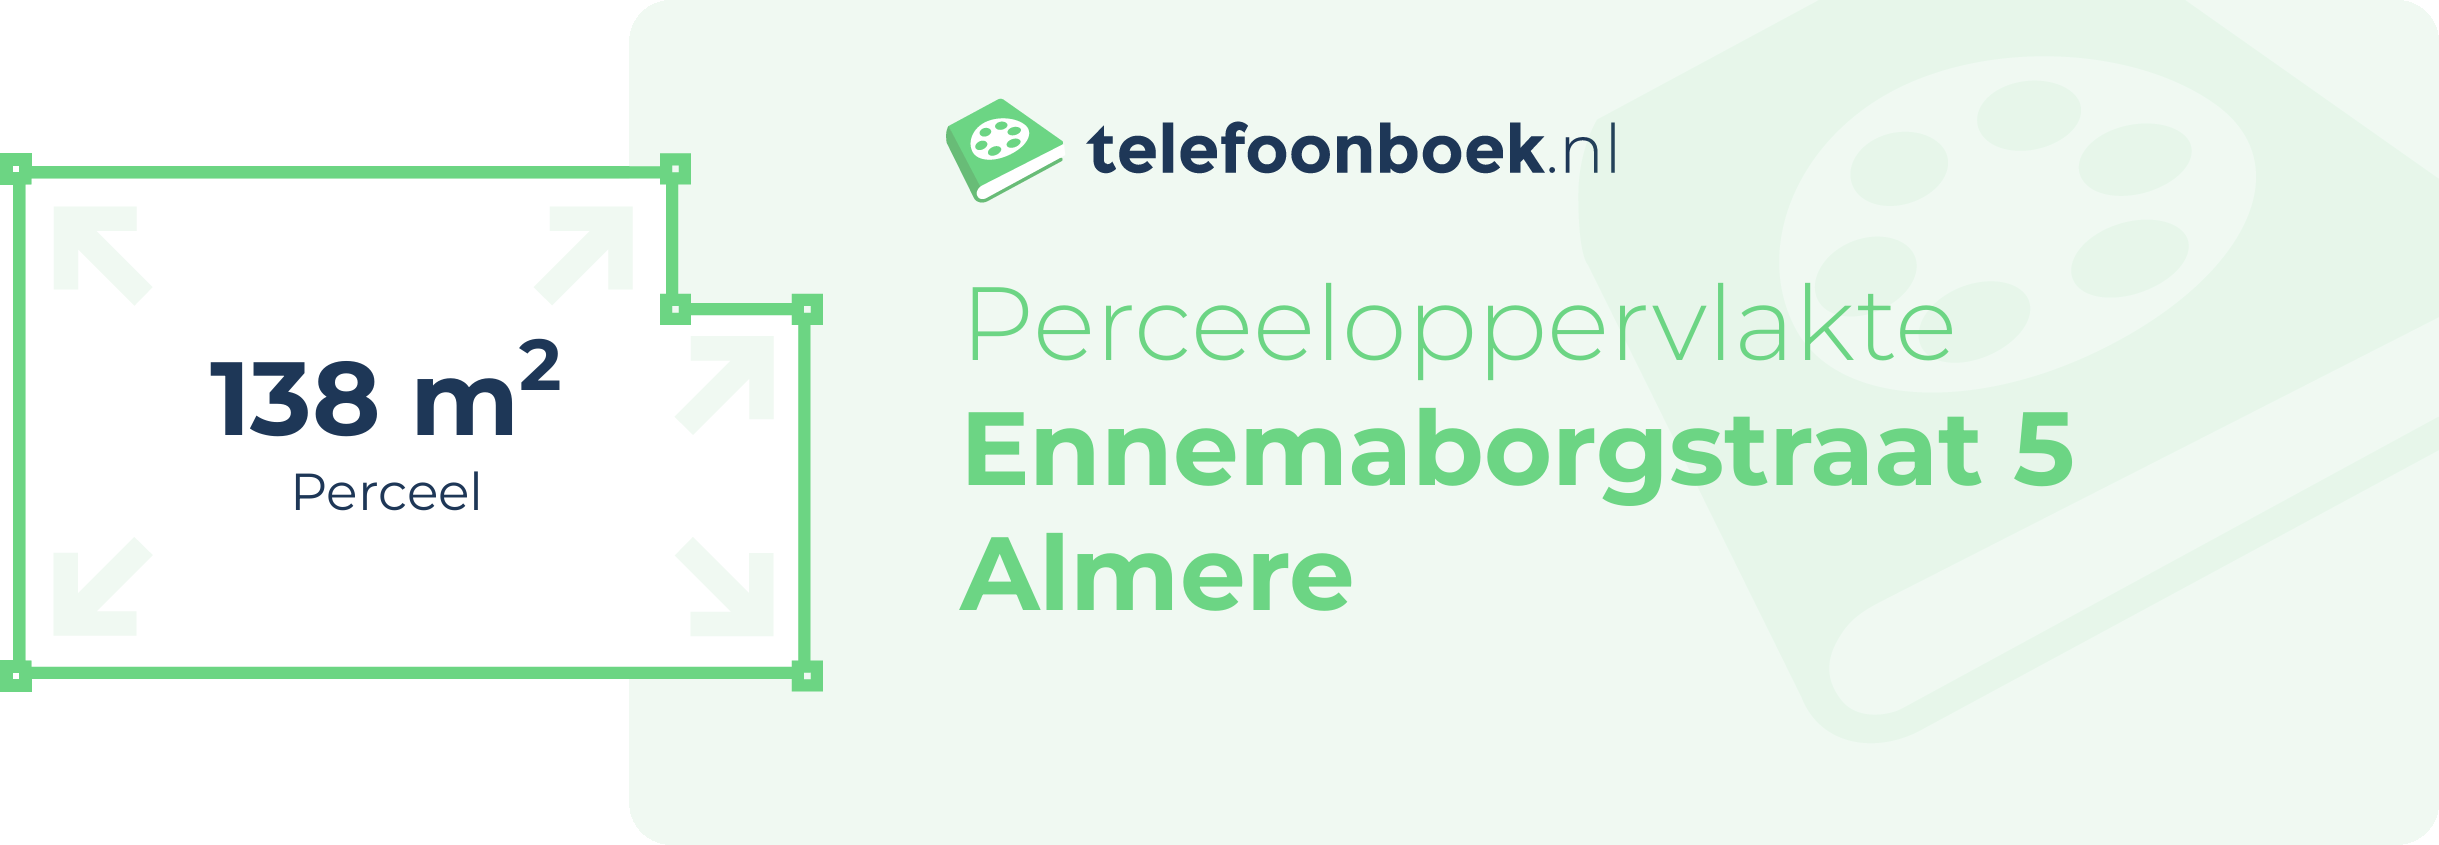 Perceeloppervlakte Ennemaborgstraat 5 Almere